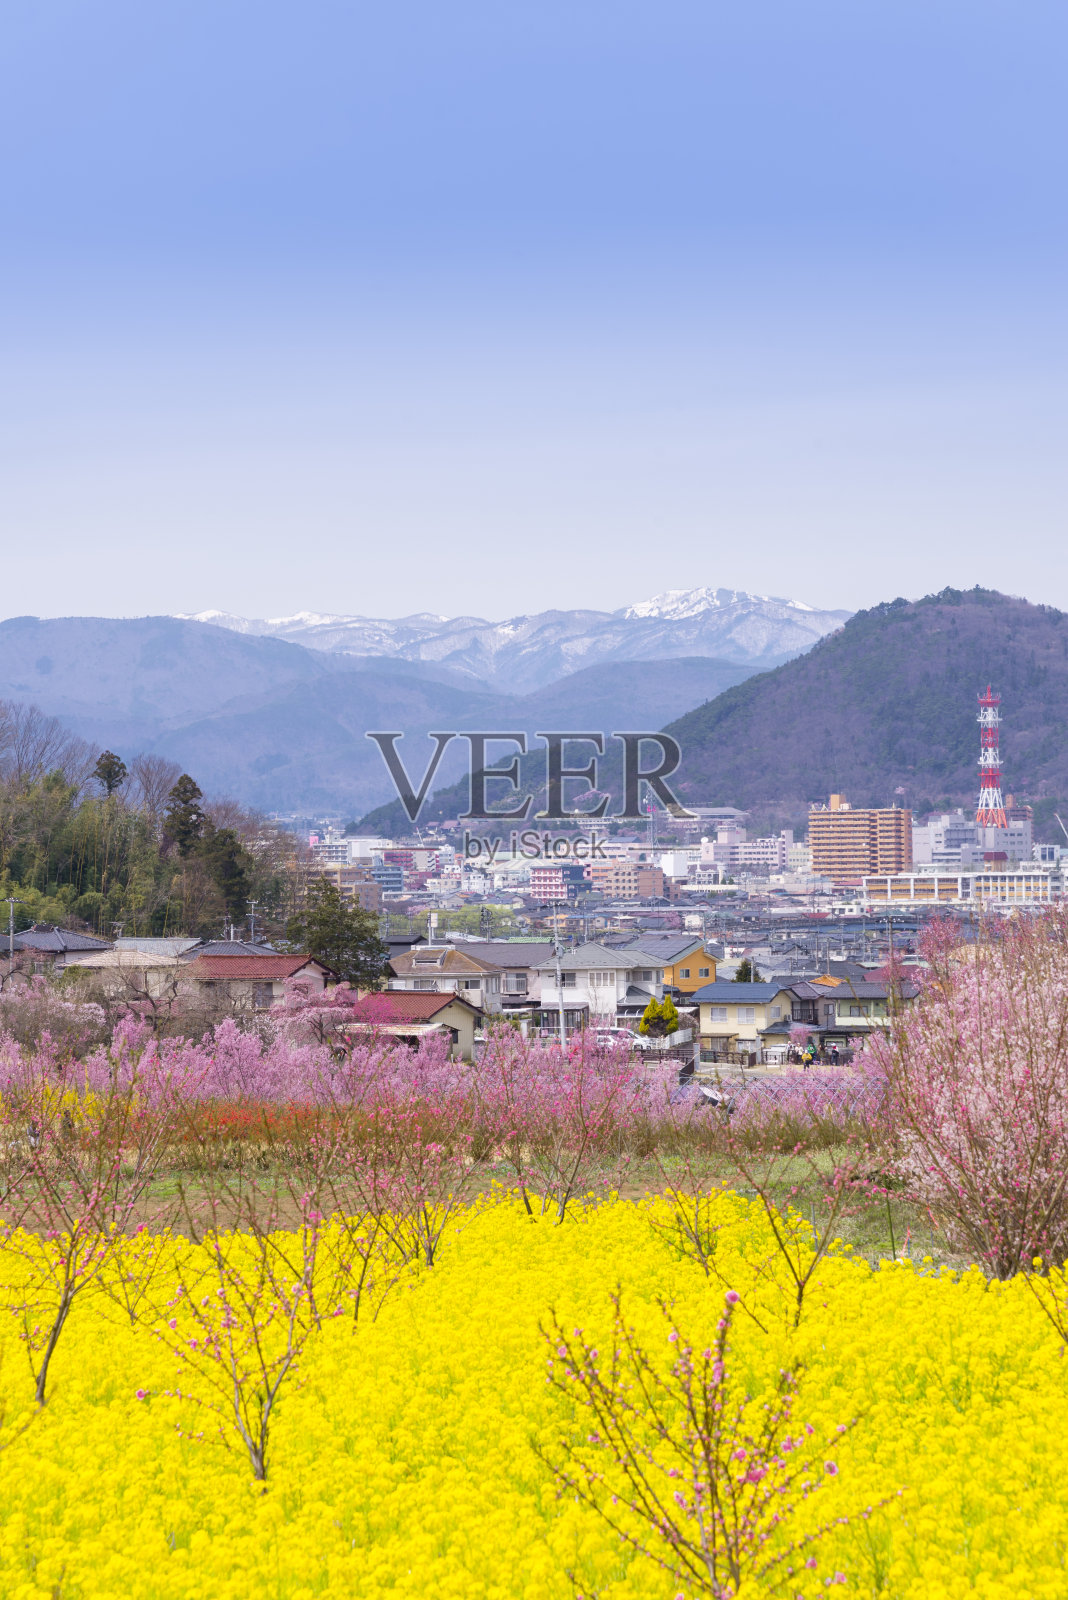 日本东北地区福岛的花山公园和福岛市景中的樱花和各种花卉。这个公园是非常著名的樱花景点照片摄影图片